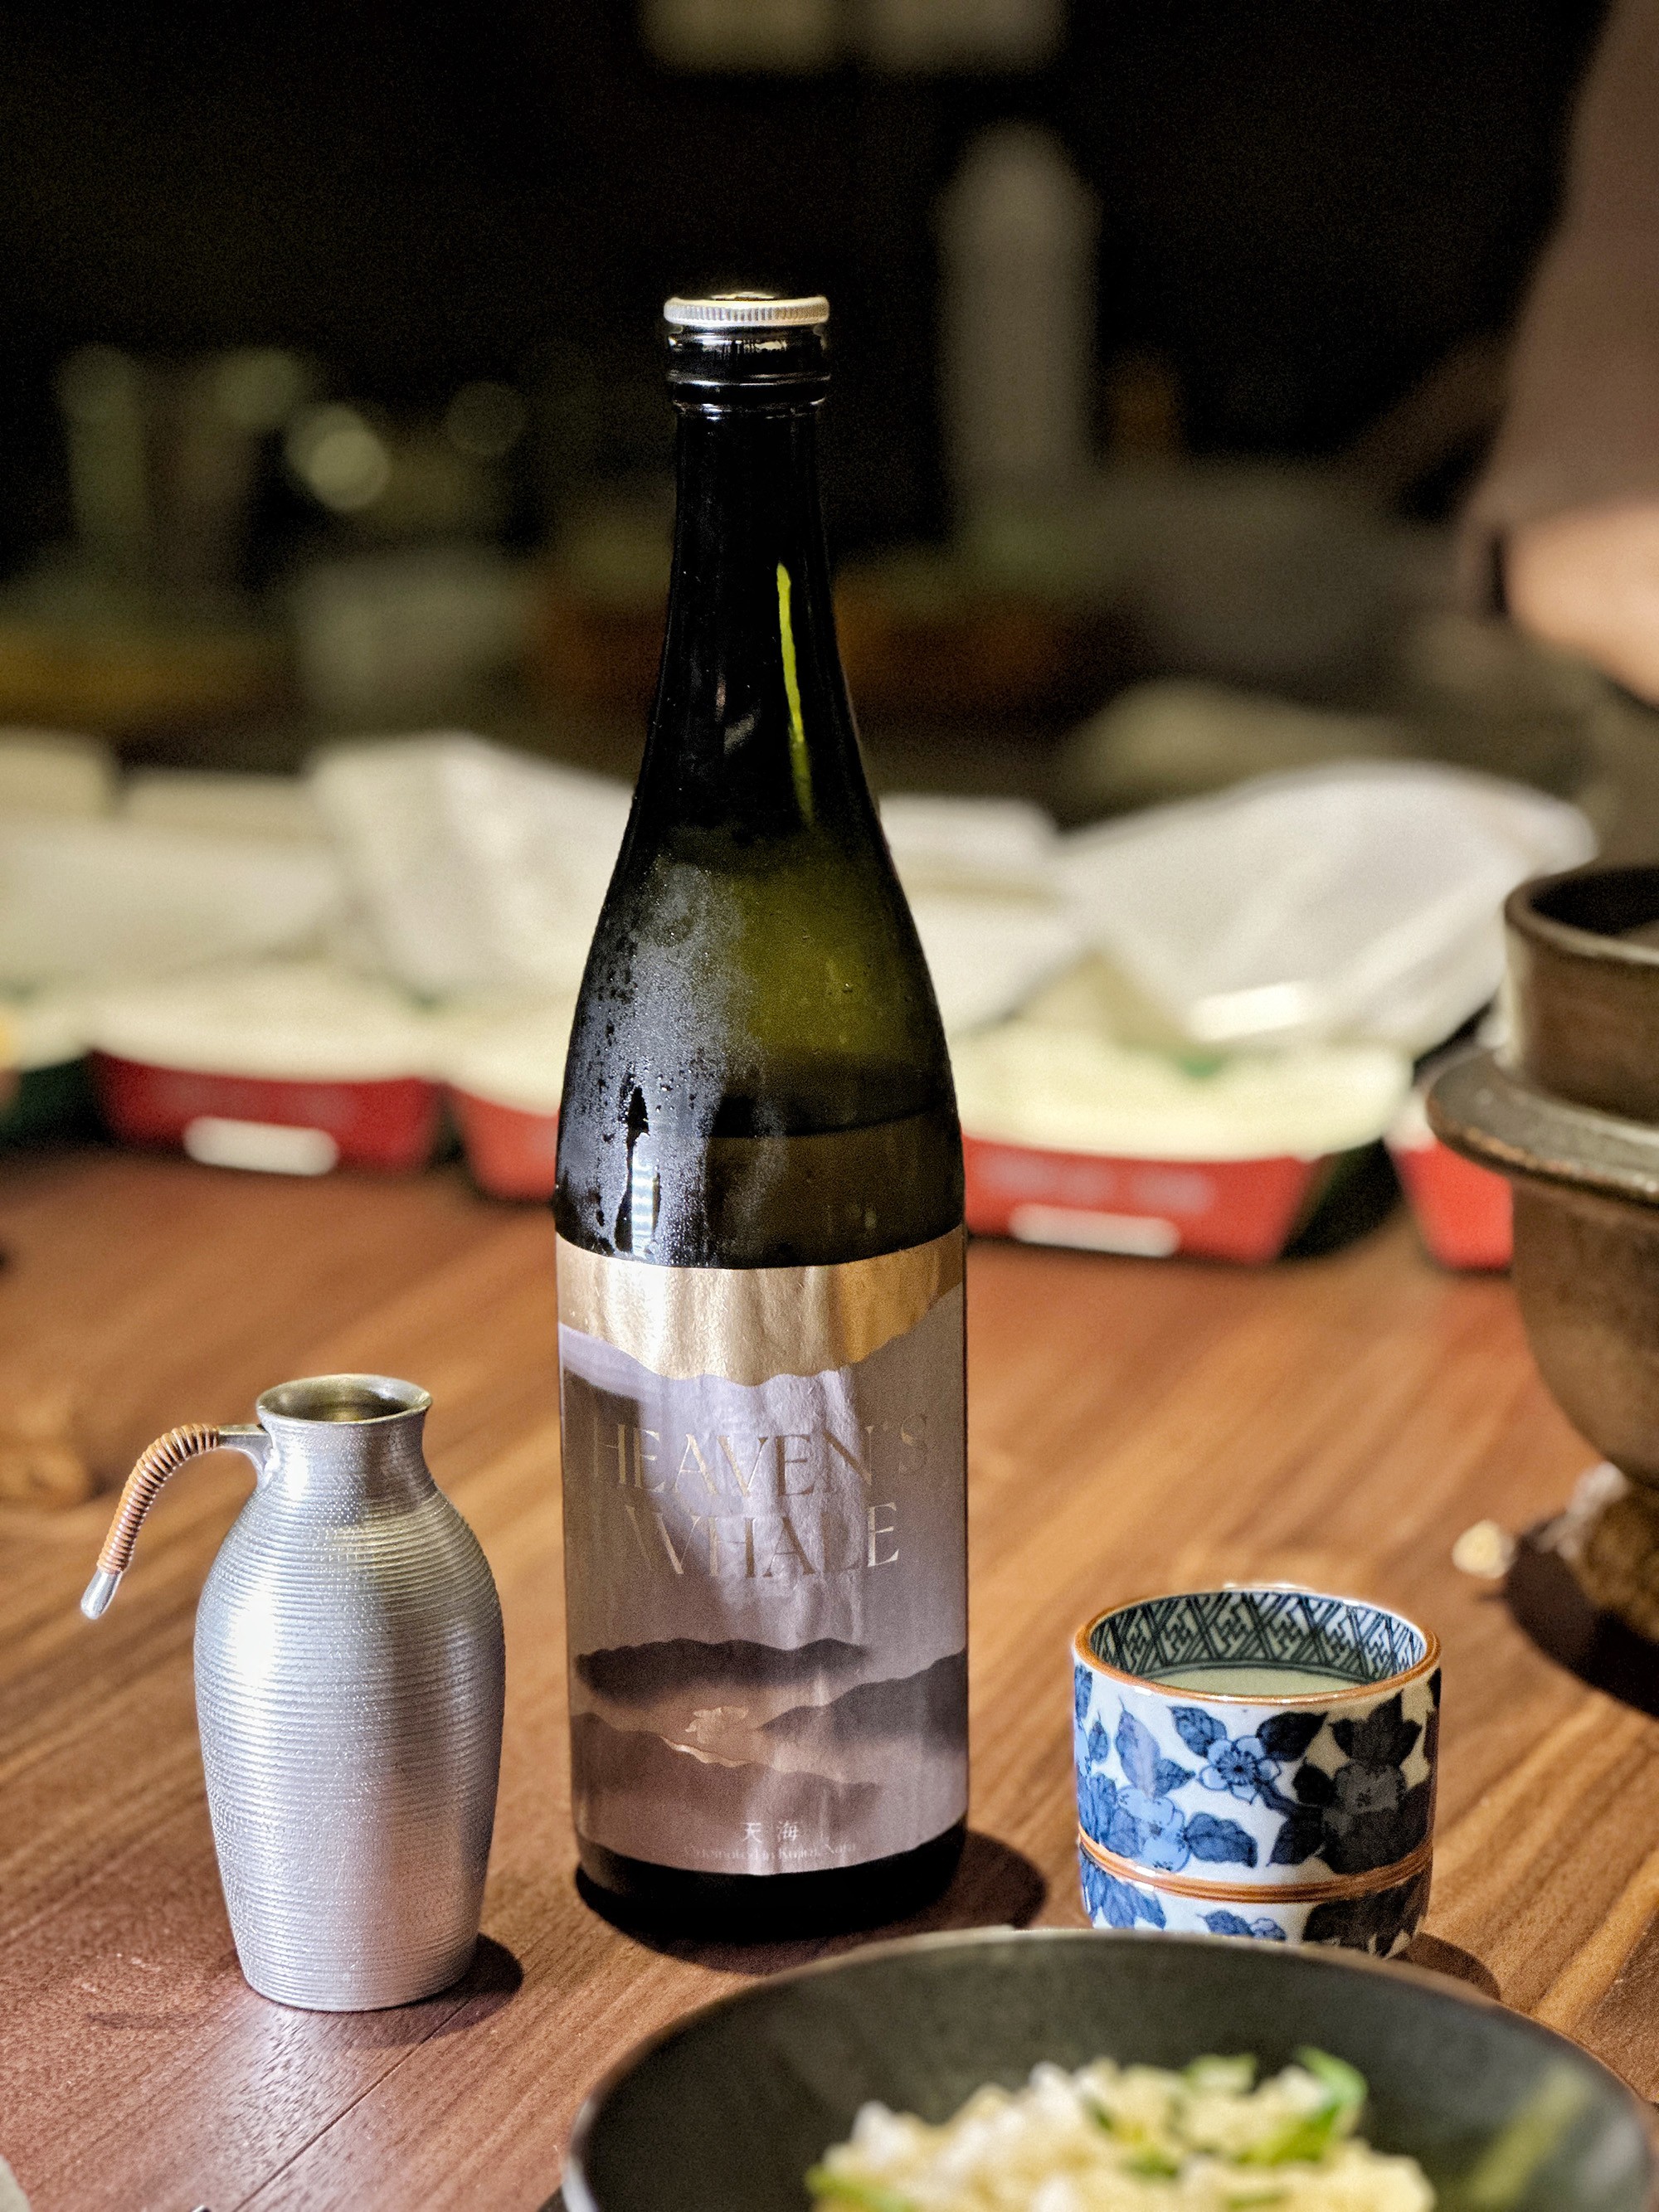 奈良縣千代酒造的「Heaven’s Whale 天地 Amatsuchi」，僅取用釀造部分的「最中取」，喝起來口感較為濃郁，可清楚感受到米本身的鮮甜，卻又帶有十分清爽的香氣與沈穩的氣泡感。（1,500元／人，只能搭配無菜單料理）